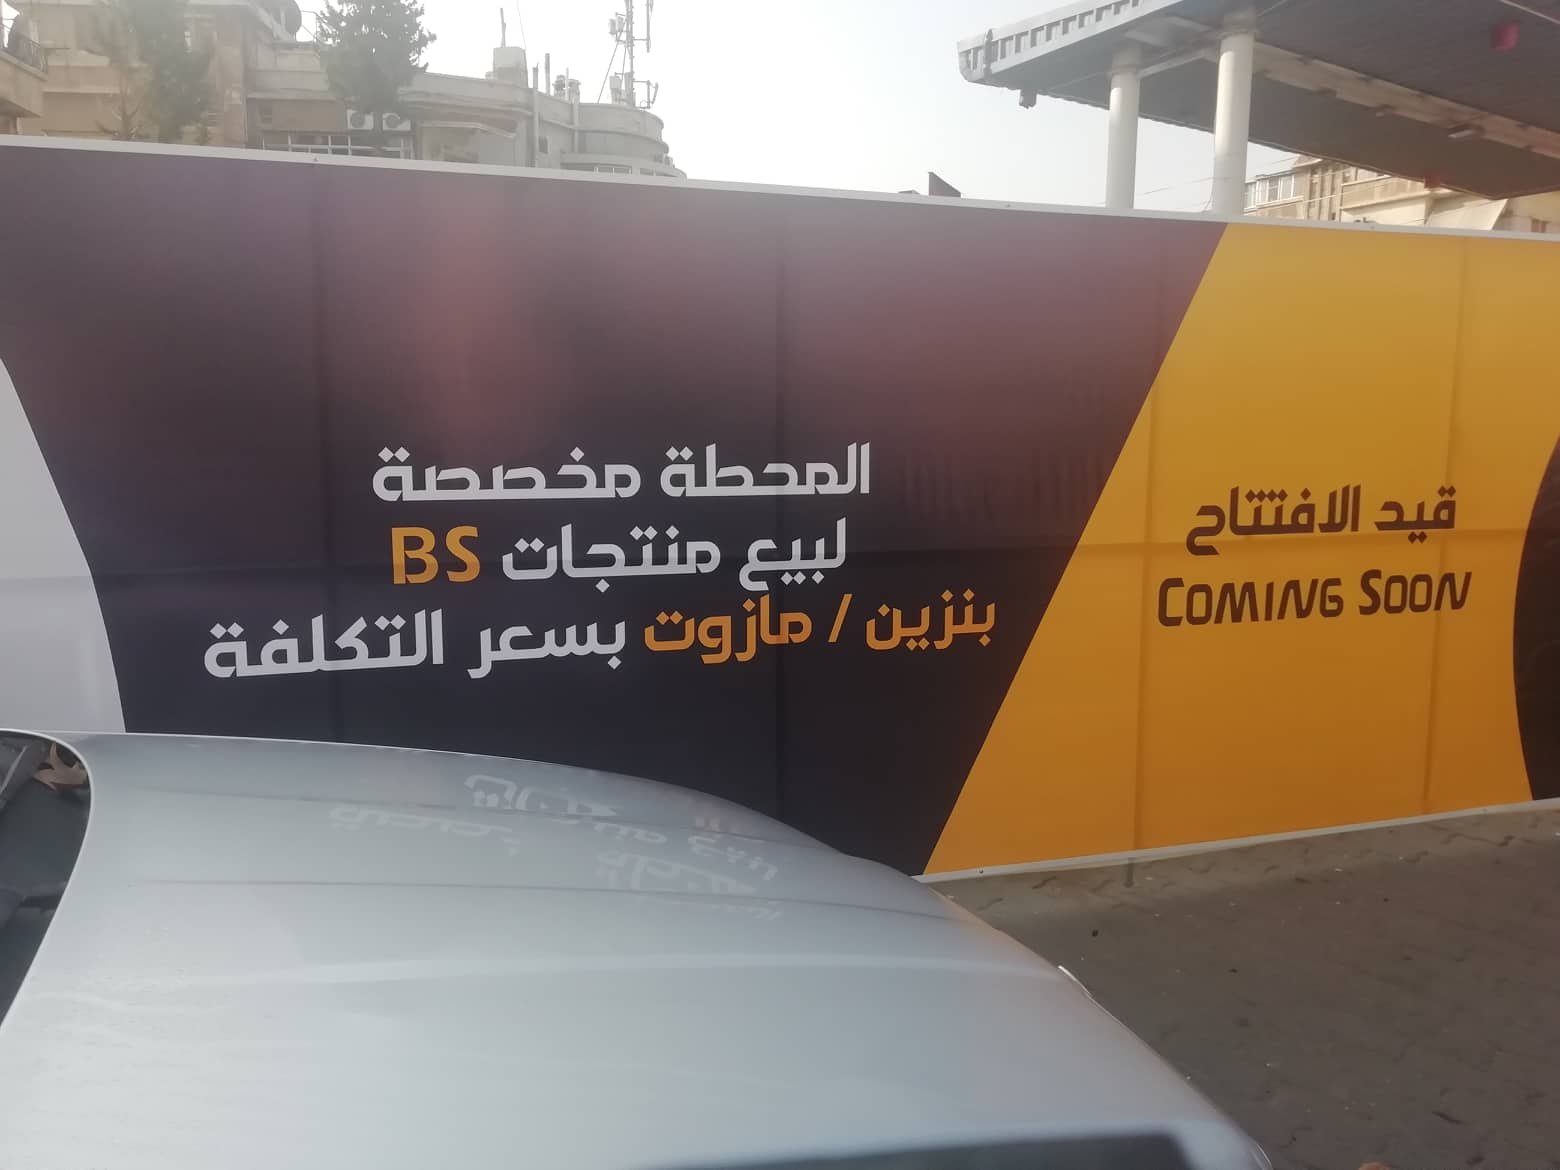 محطة وقود قيد التجهيز في دمشق تابعة لشركة "B.S" (الباحث السوري كرم شعار)